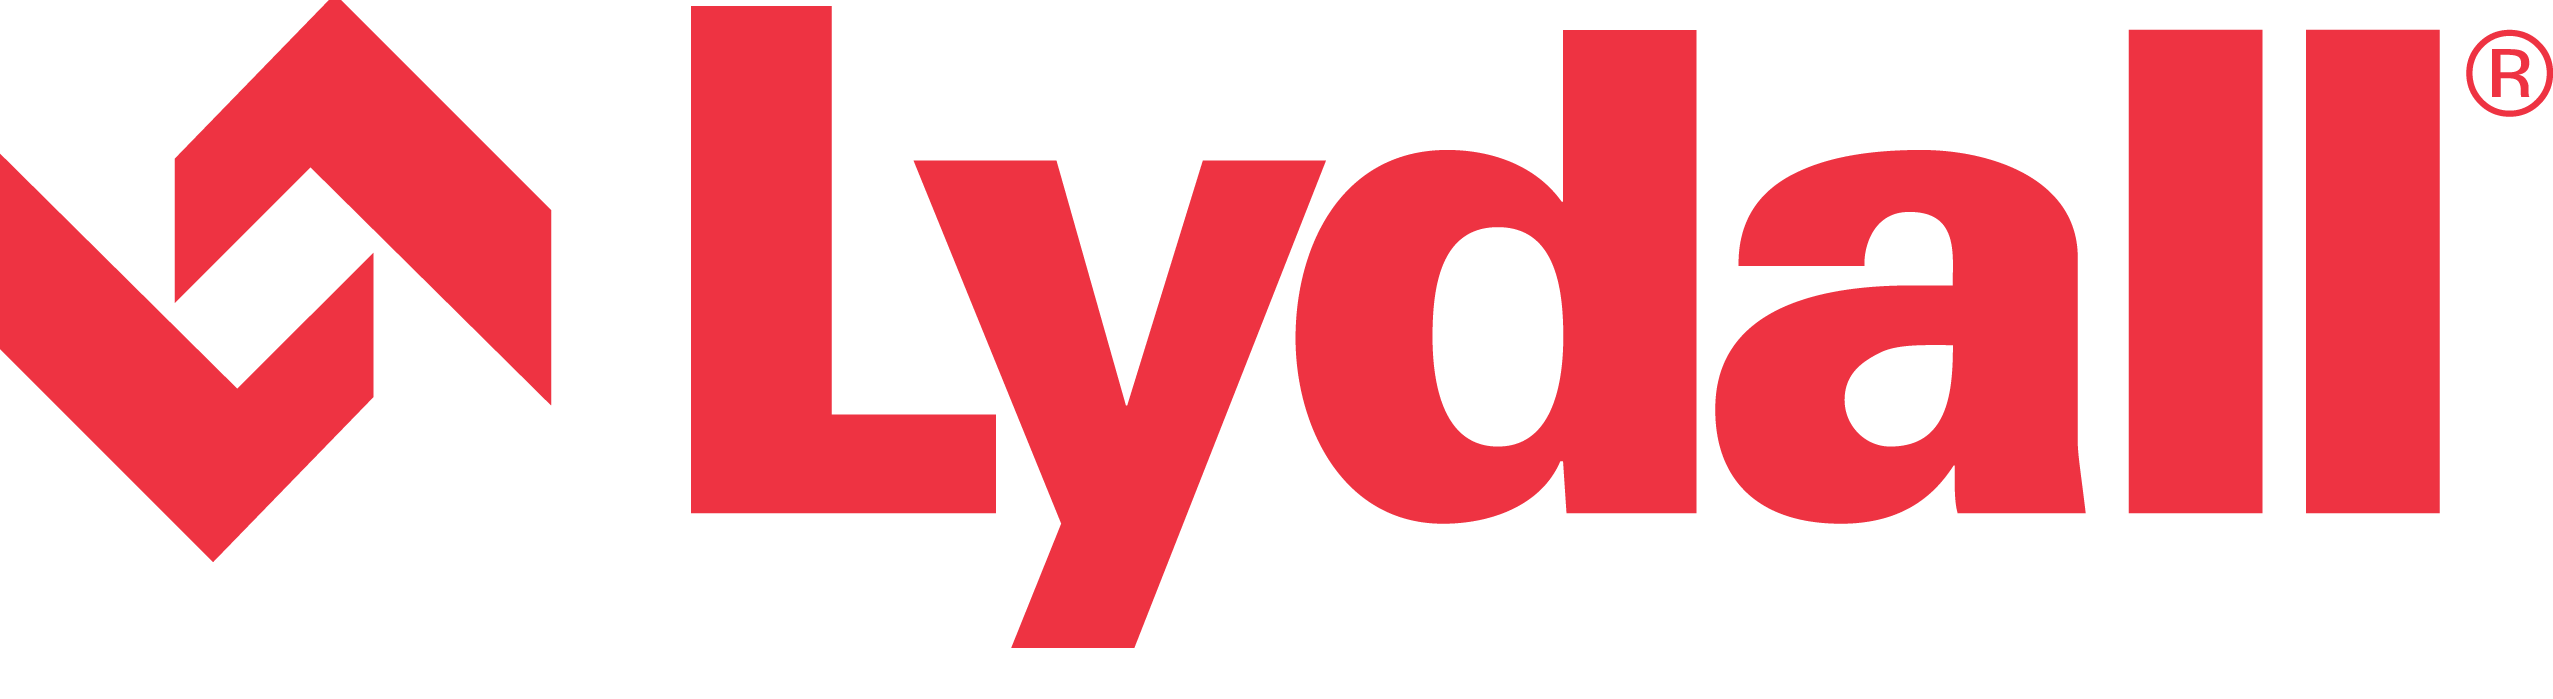 Lydall  logo